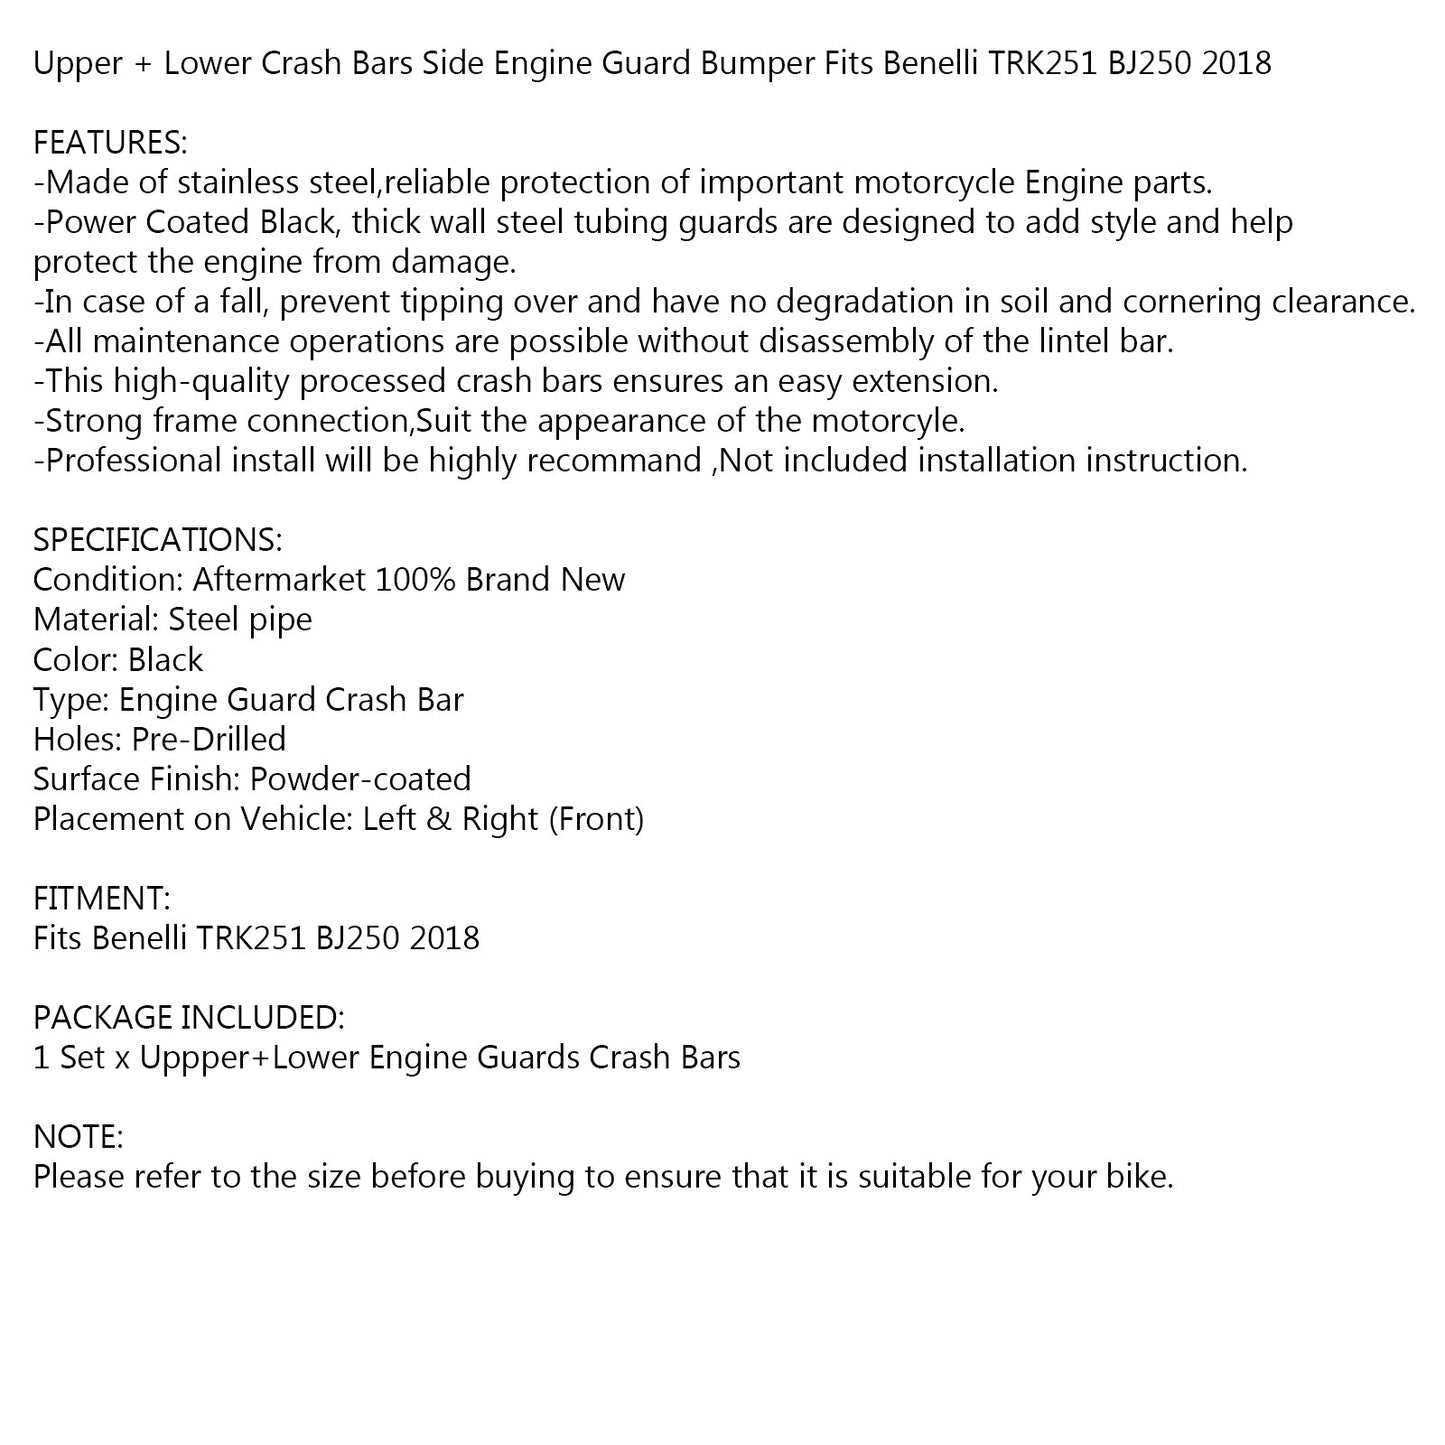 Upper + Lower Crash Bar Engine Guard Bumper Set for Benelli TRK251 BJ250 2018